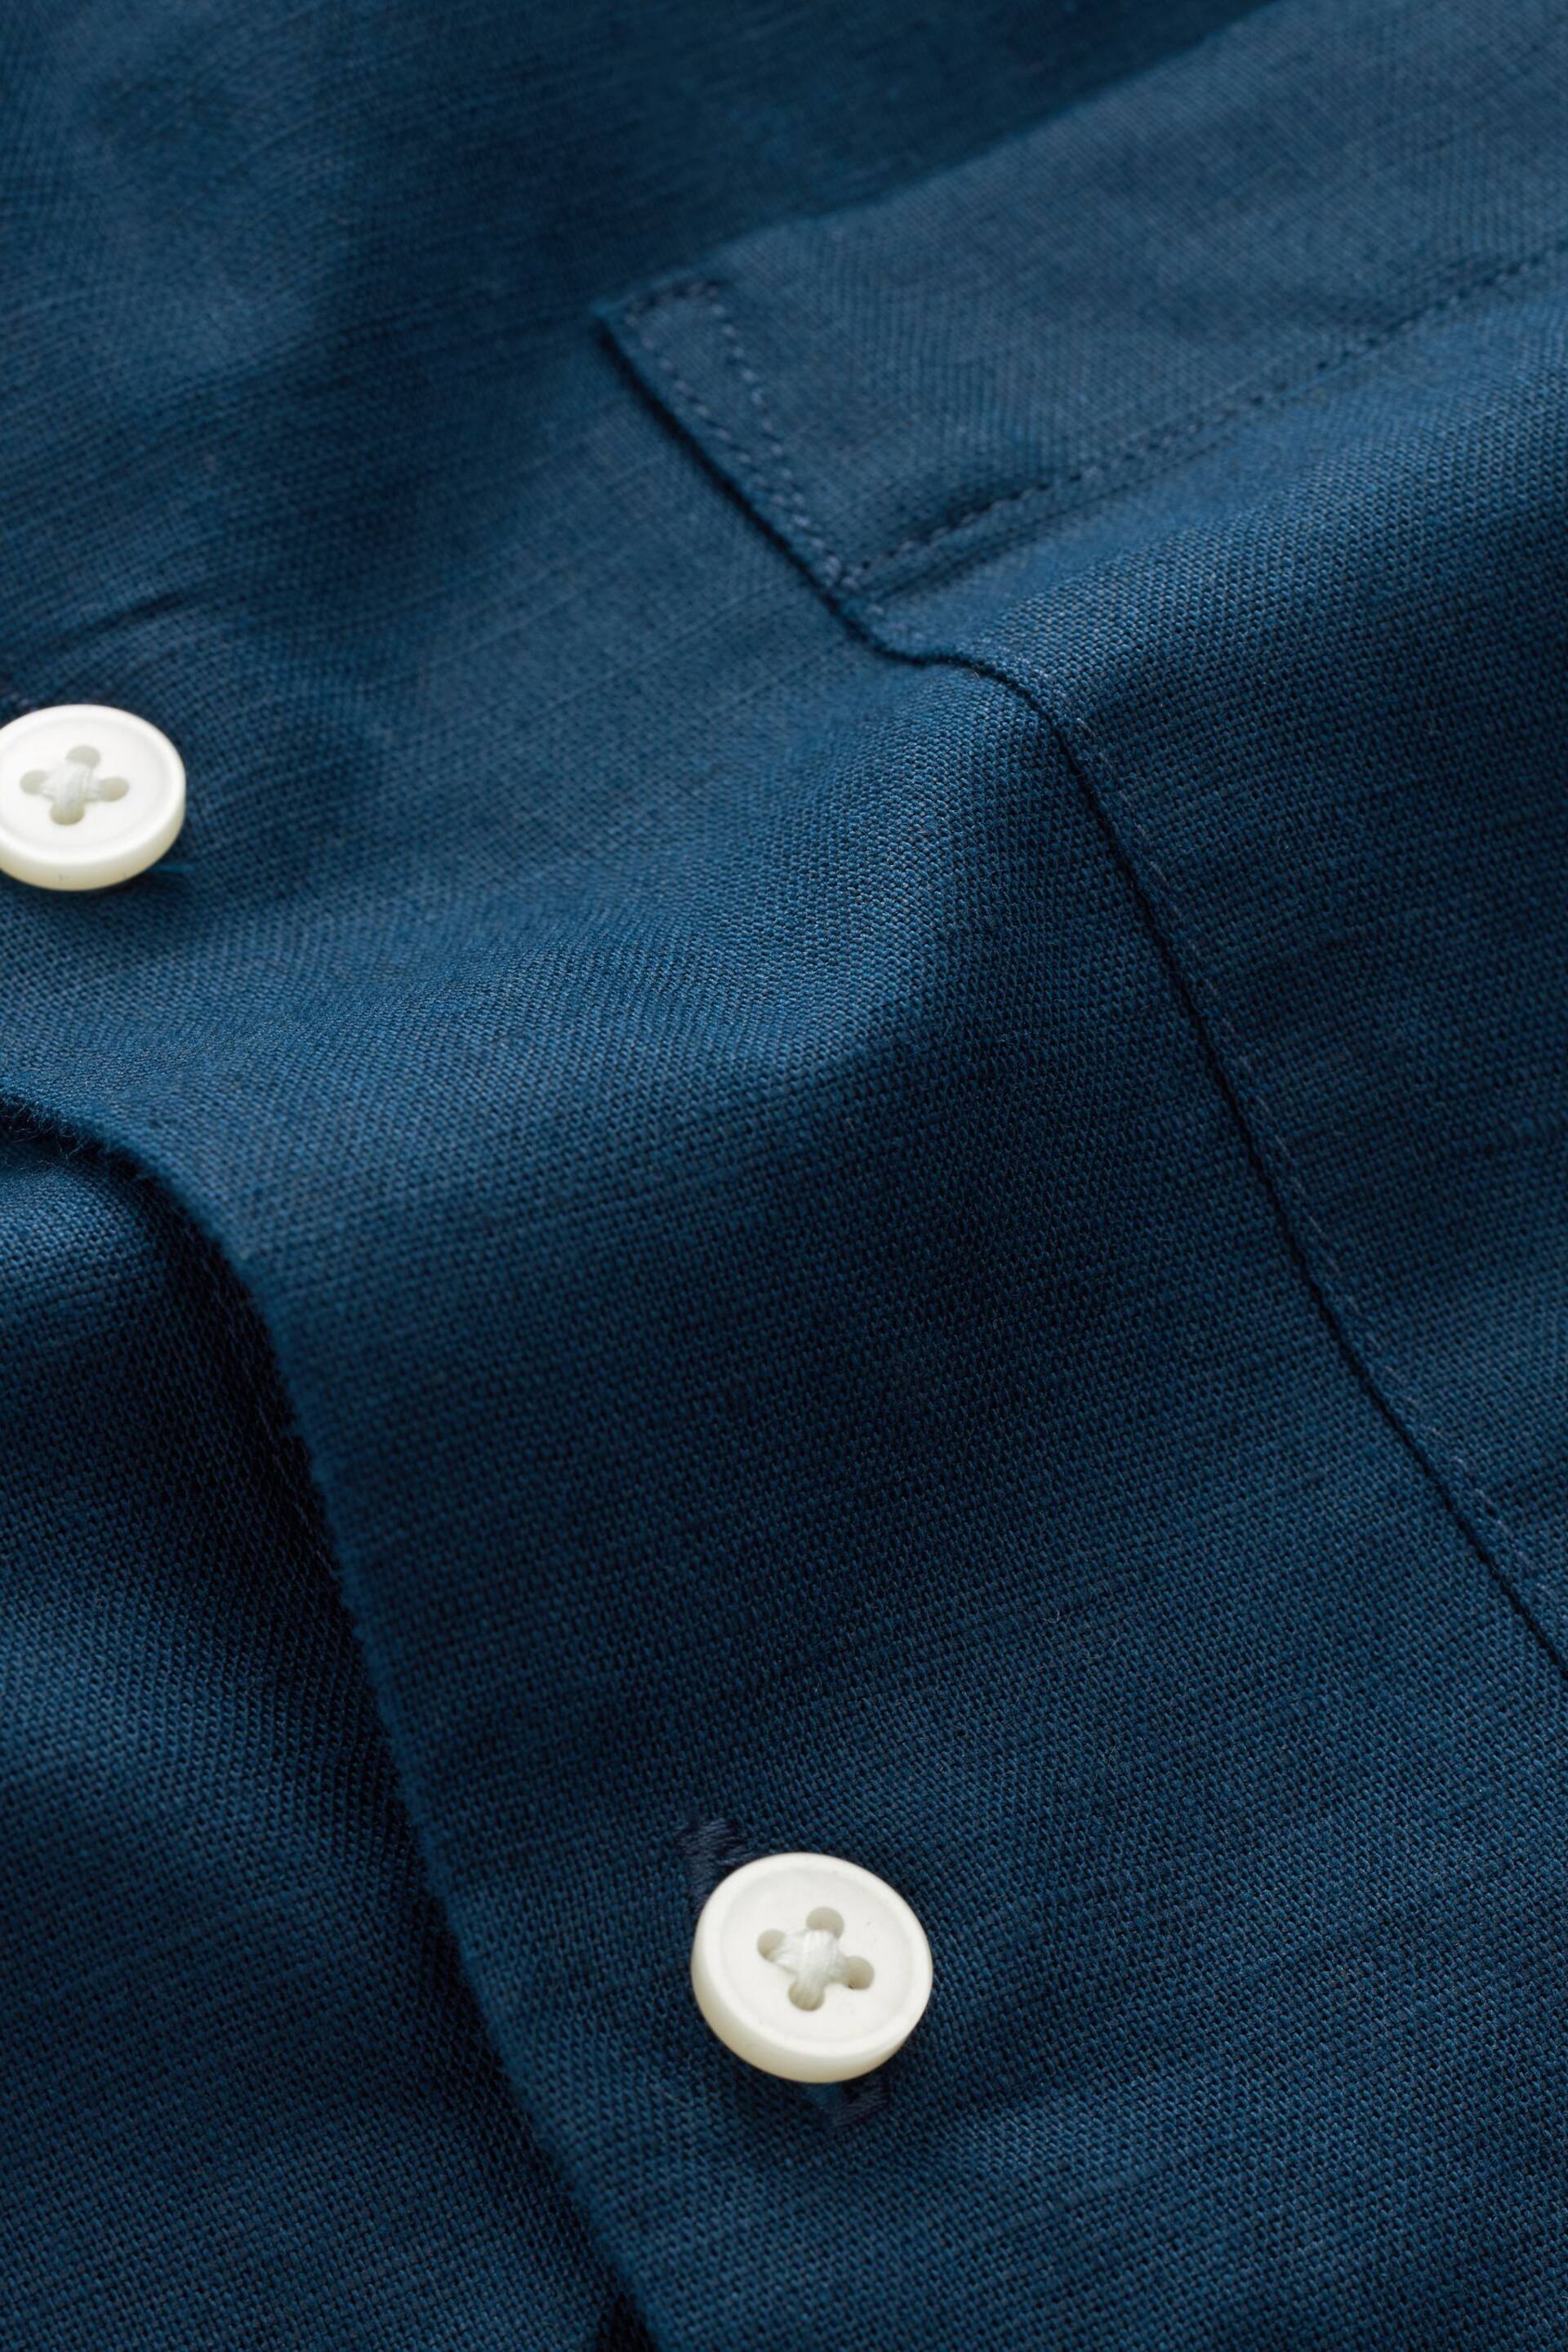 Navy Linen Blend Long Sleeve Shirt - Image 7 of 7